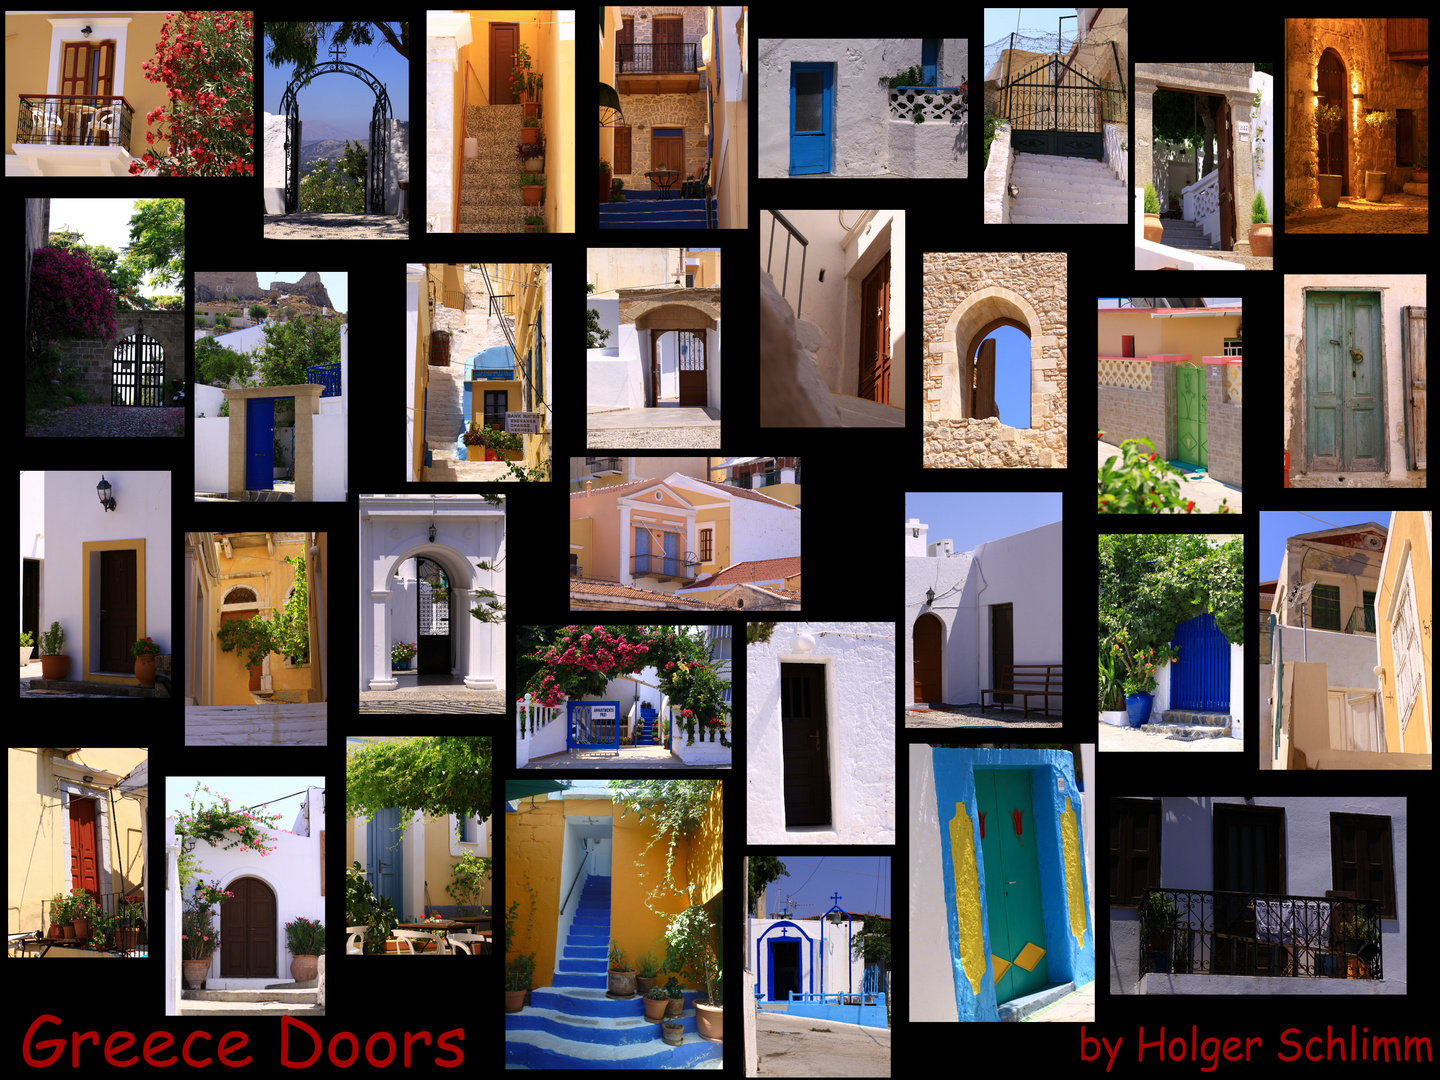 Greece Doors